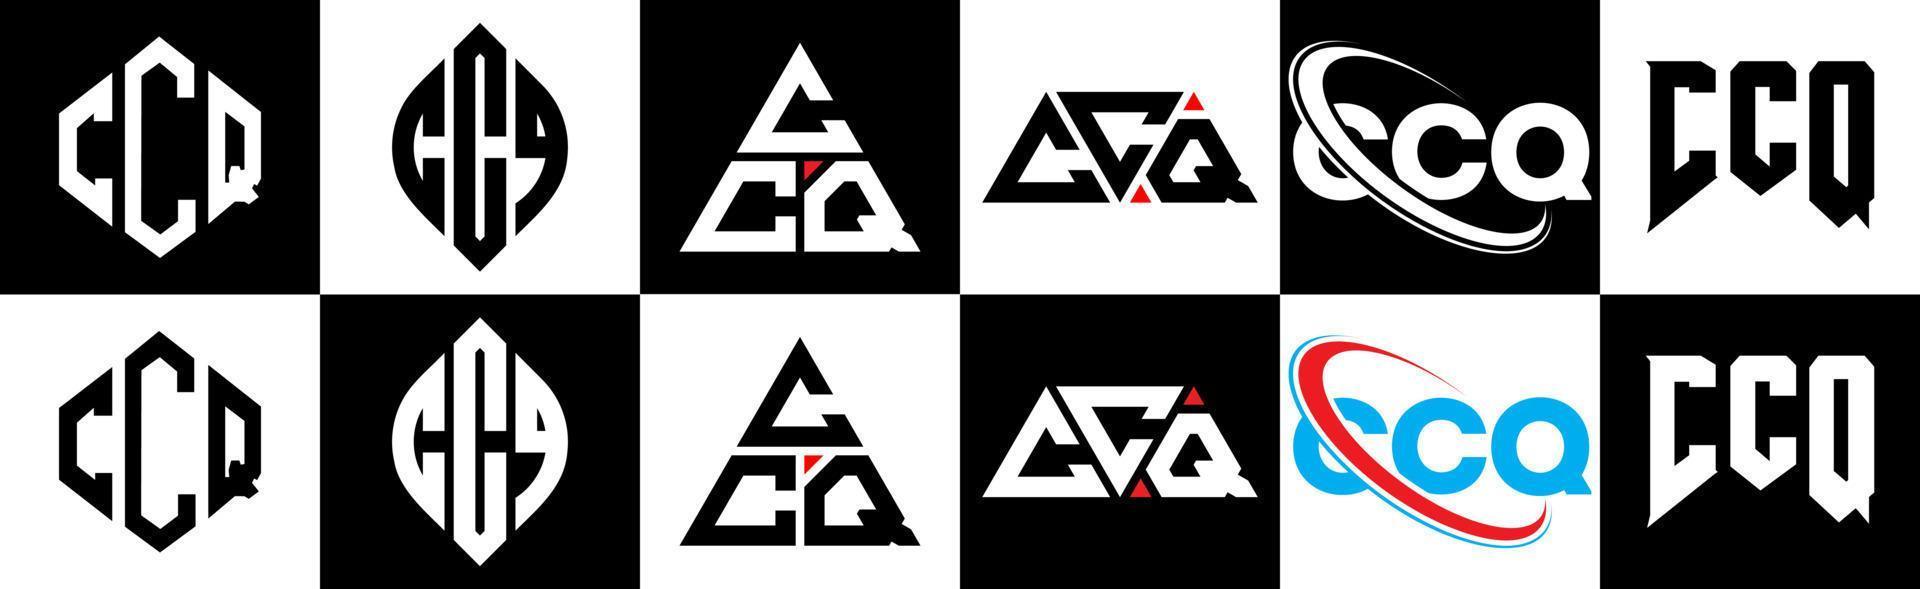 design de logotipo de letra ccq em seis estilo. polígono ccq, círculo, triângulo, hexágono, estilo plano e simples com logotipo de letra de variação de cor preto e branco definido em uma prancheta. ccq logotipo minimalista e clássico vetor